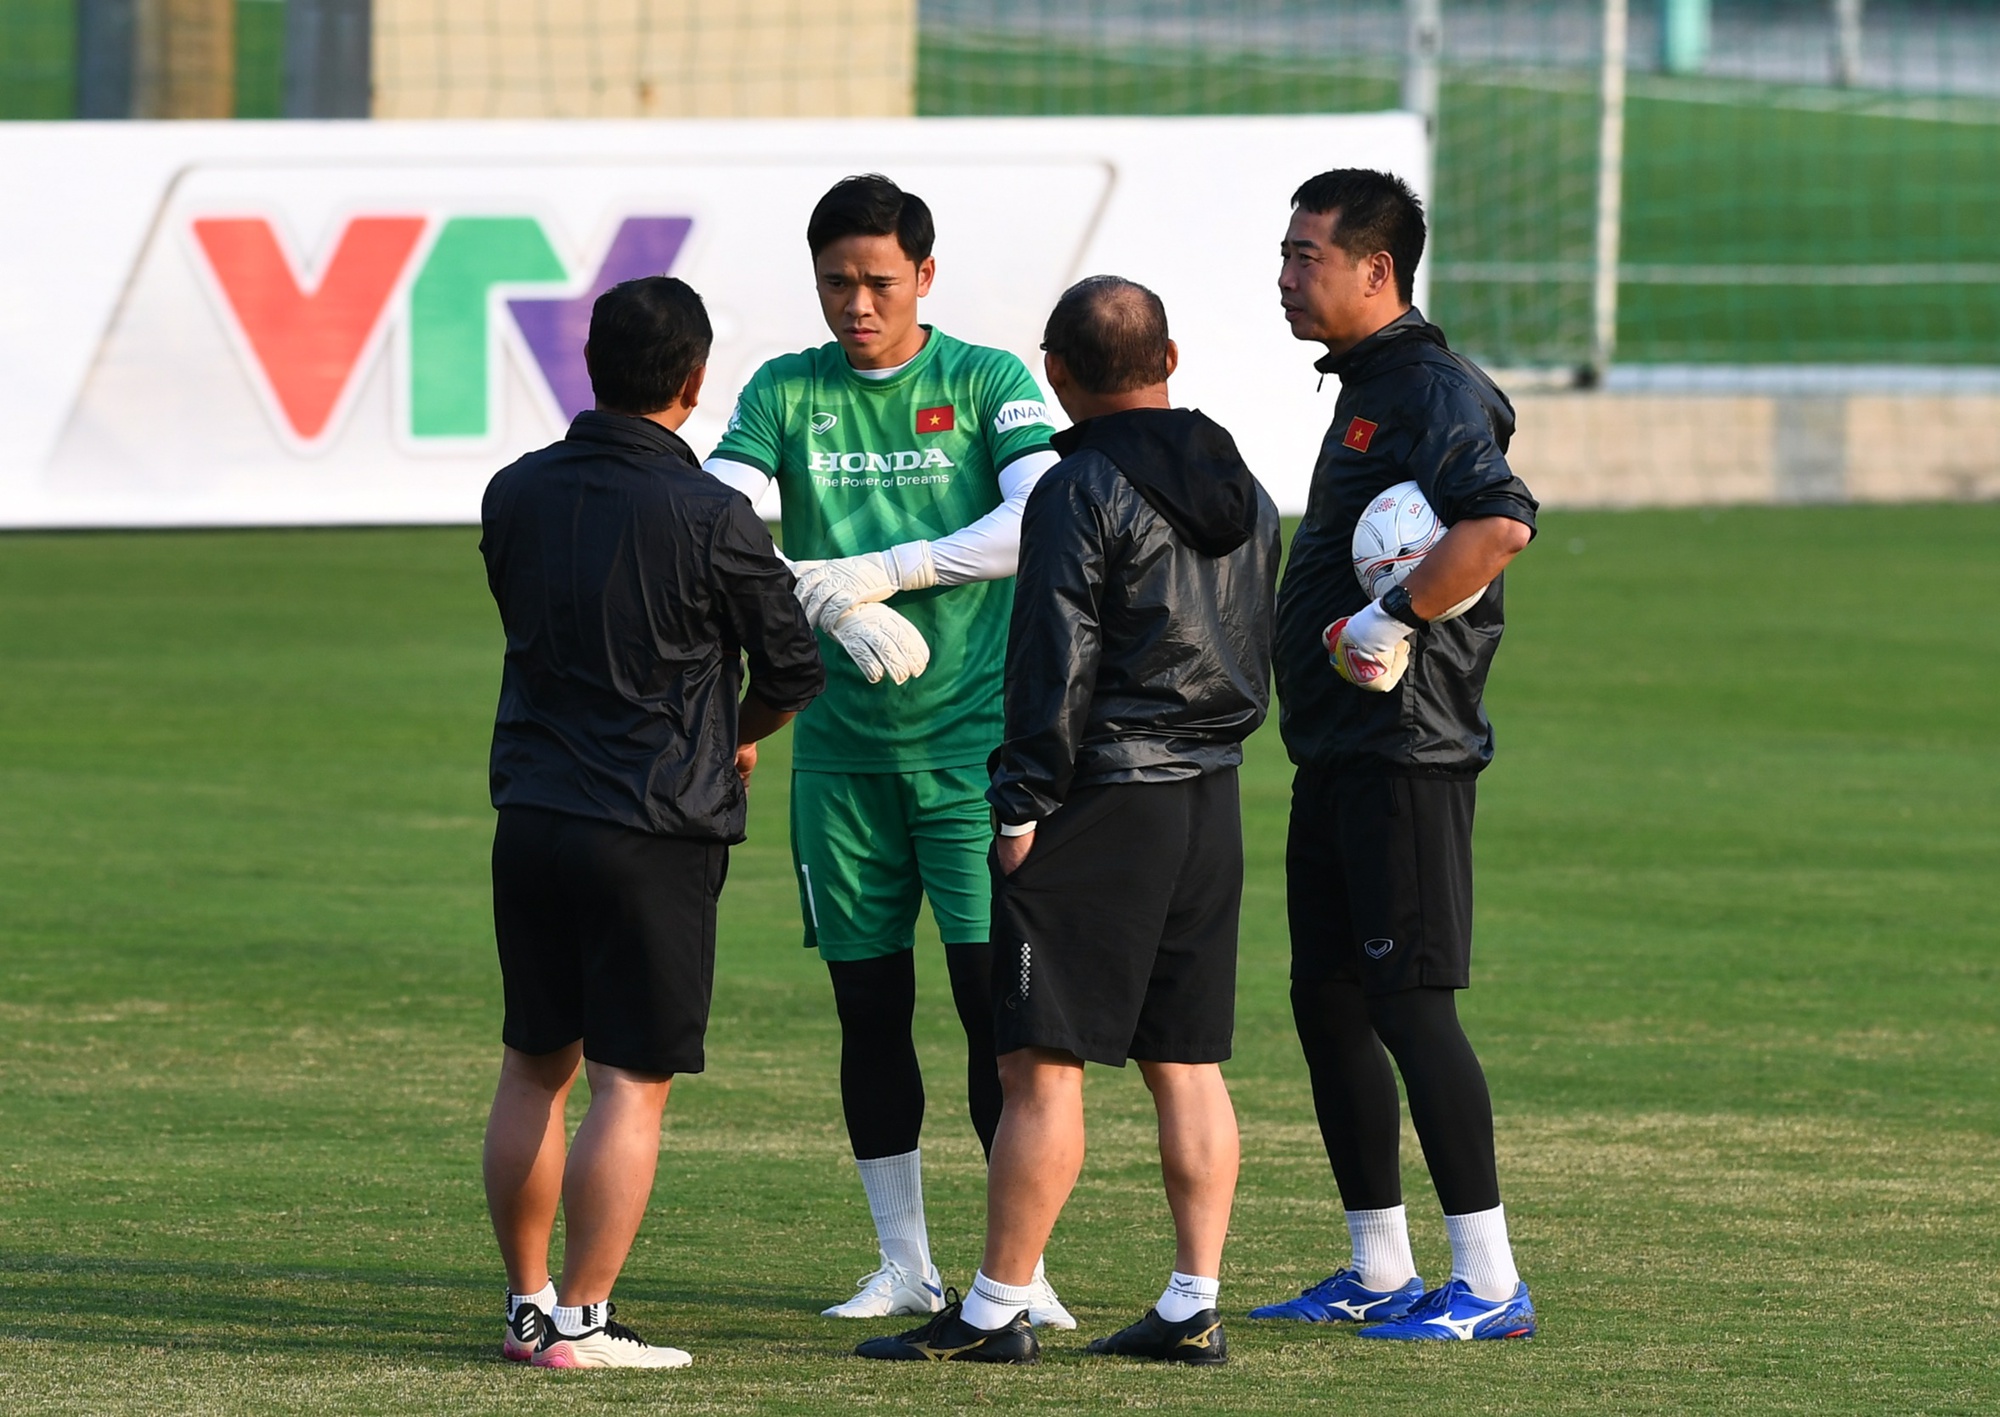 HLV Park Hang-seo cạn lời, cầu thủ ĐT Việt Nam bật cười với bài tập chóng mặt - Ảnh 6.